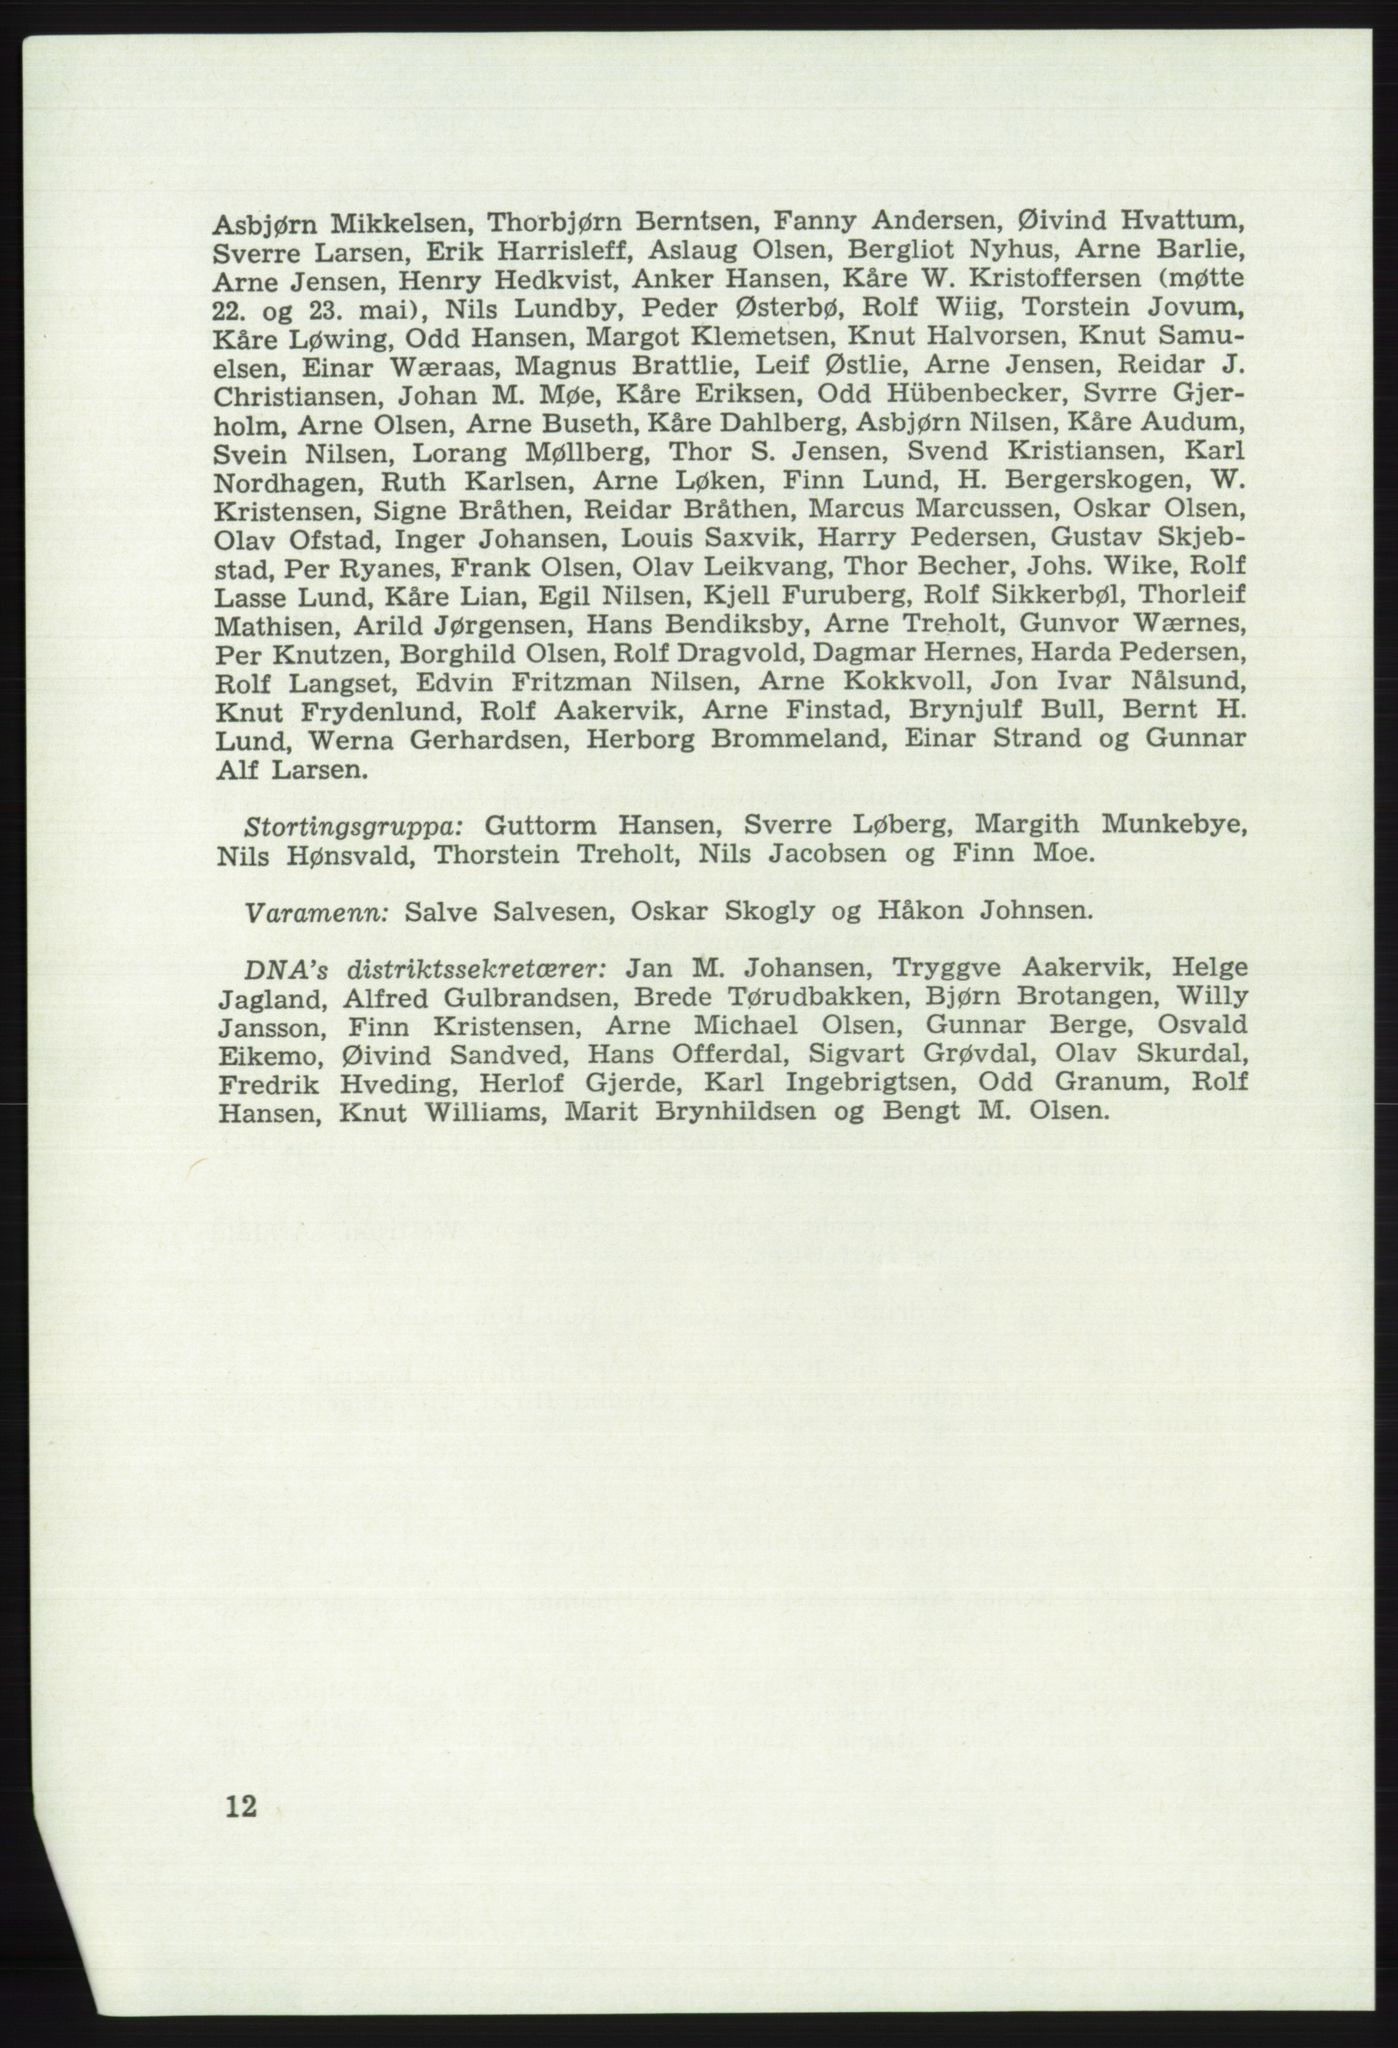 Det norske Arbeiderparti - publikasjoner, AAB/-/-/-: Protokoll over forhandlingene på det 41. ordinære landsmøte 21.-23. mai 1967 i Oslo, 1967, s. 12